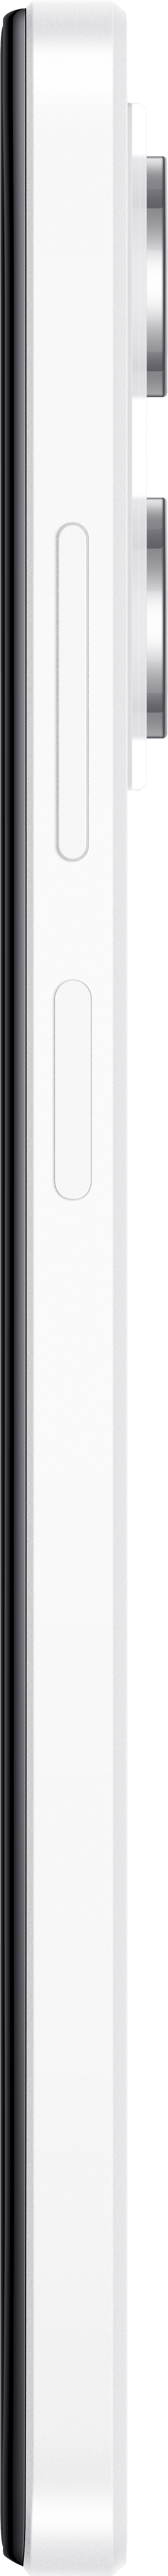 XIAOMI Redmi Note 12 Pro 5G Dual 128 GB SIM White Polar